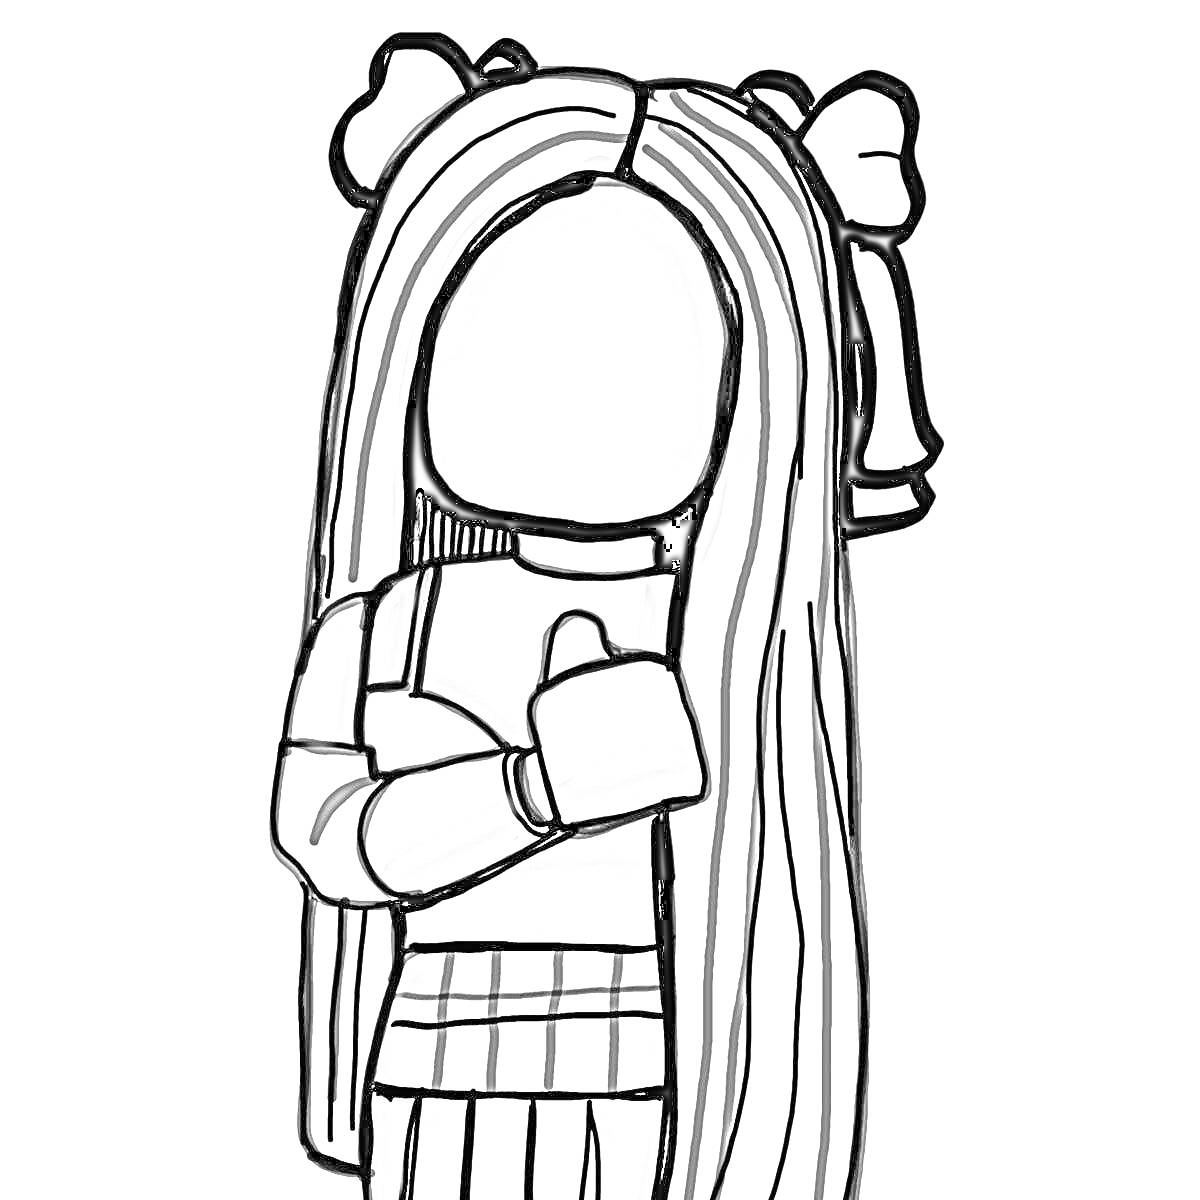 Раскраска Девочка с длинными волосами и бантиками, одетая в кофту с длинными рукавами и юбку в клетку